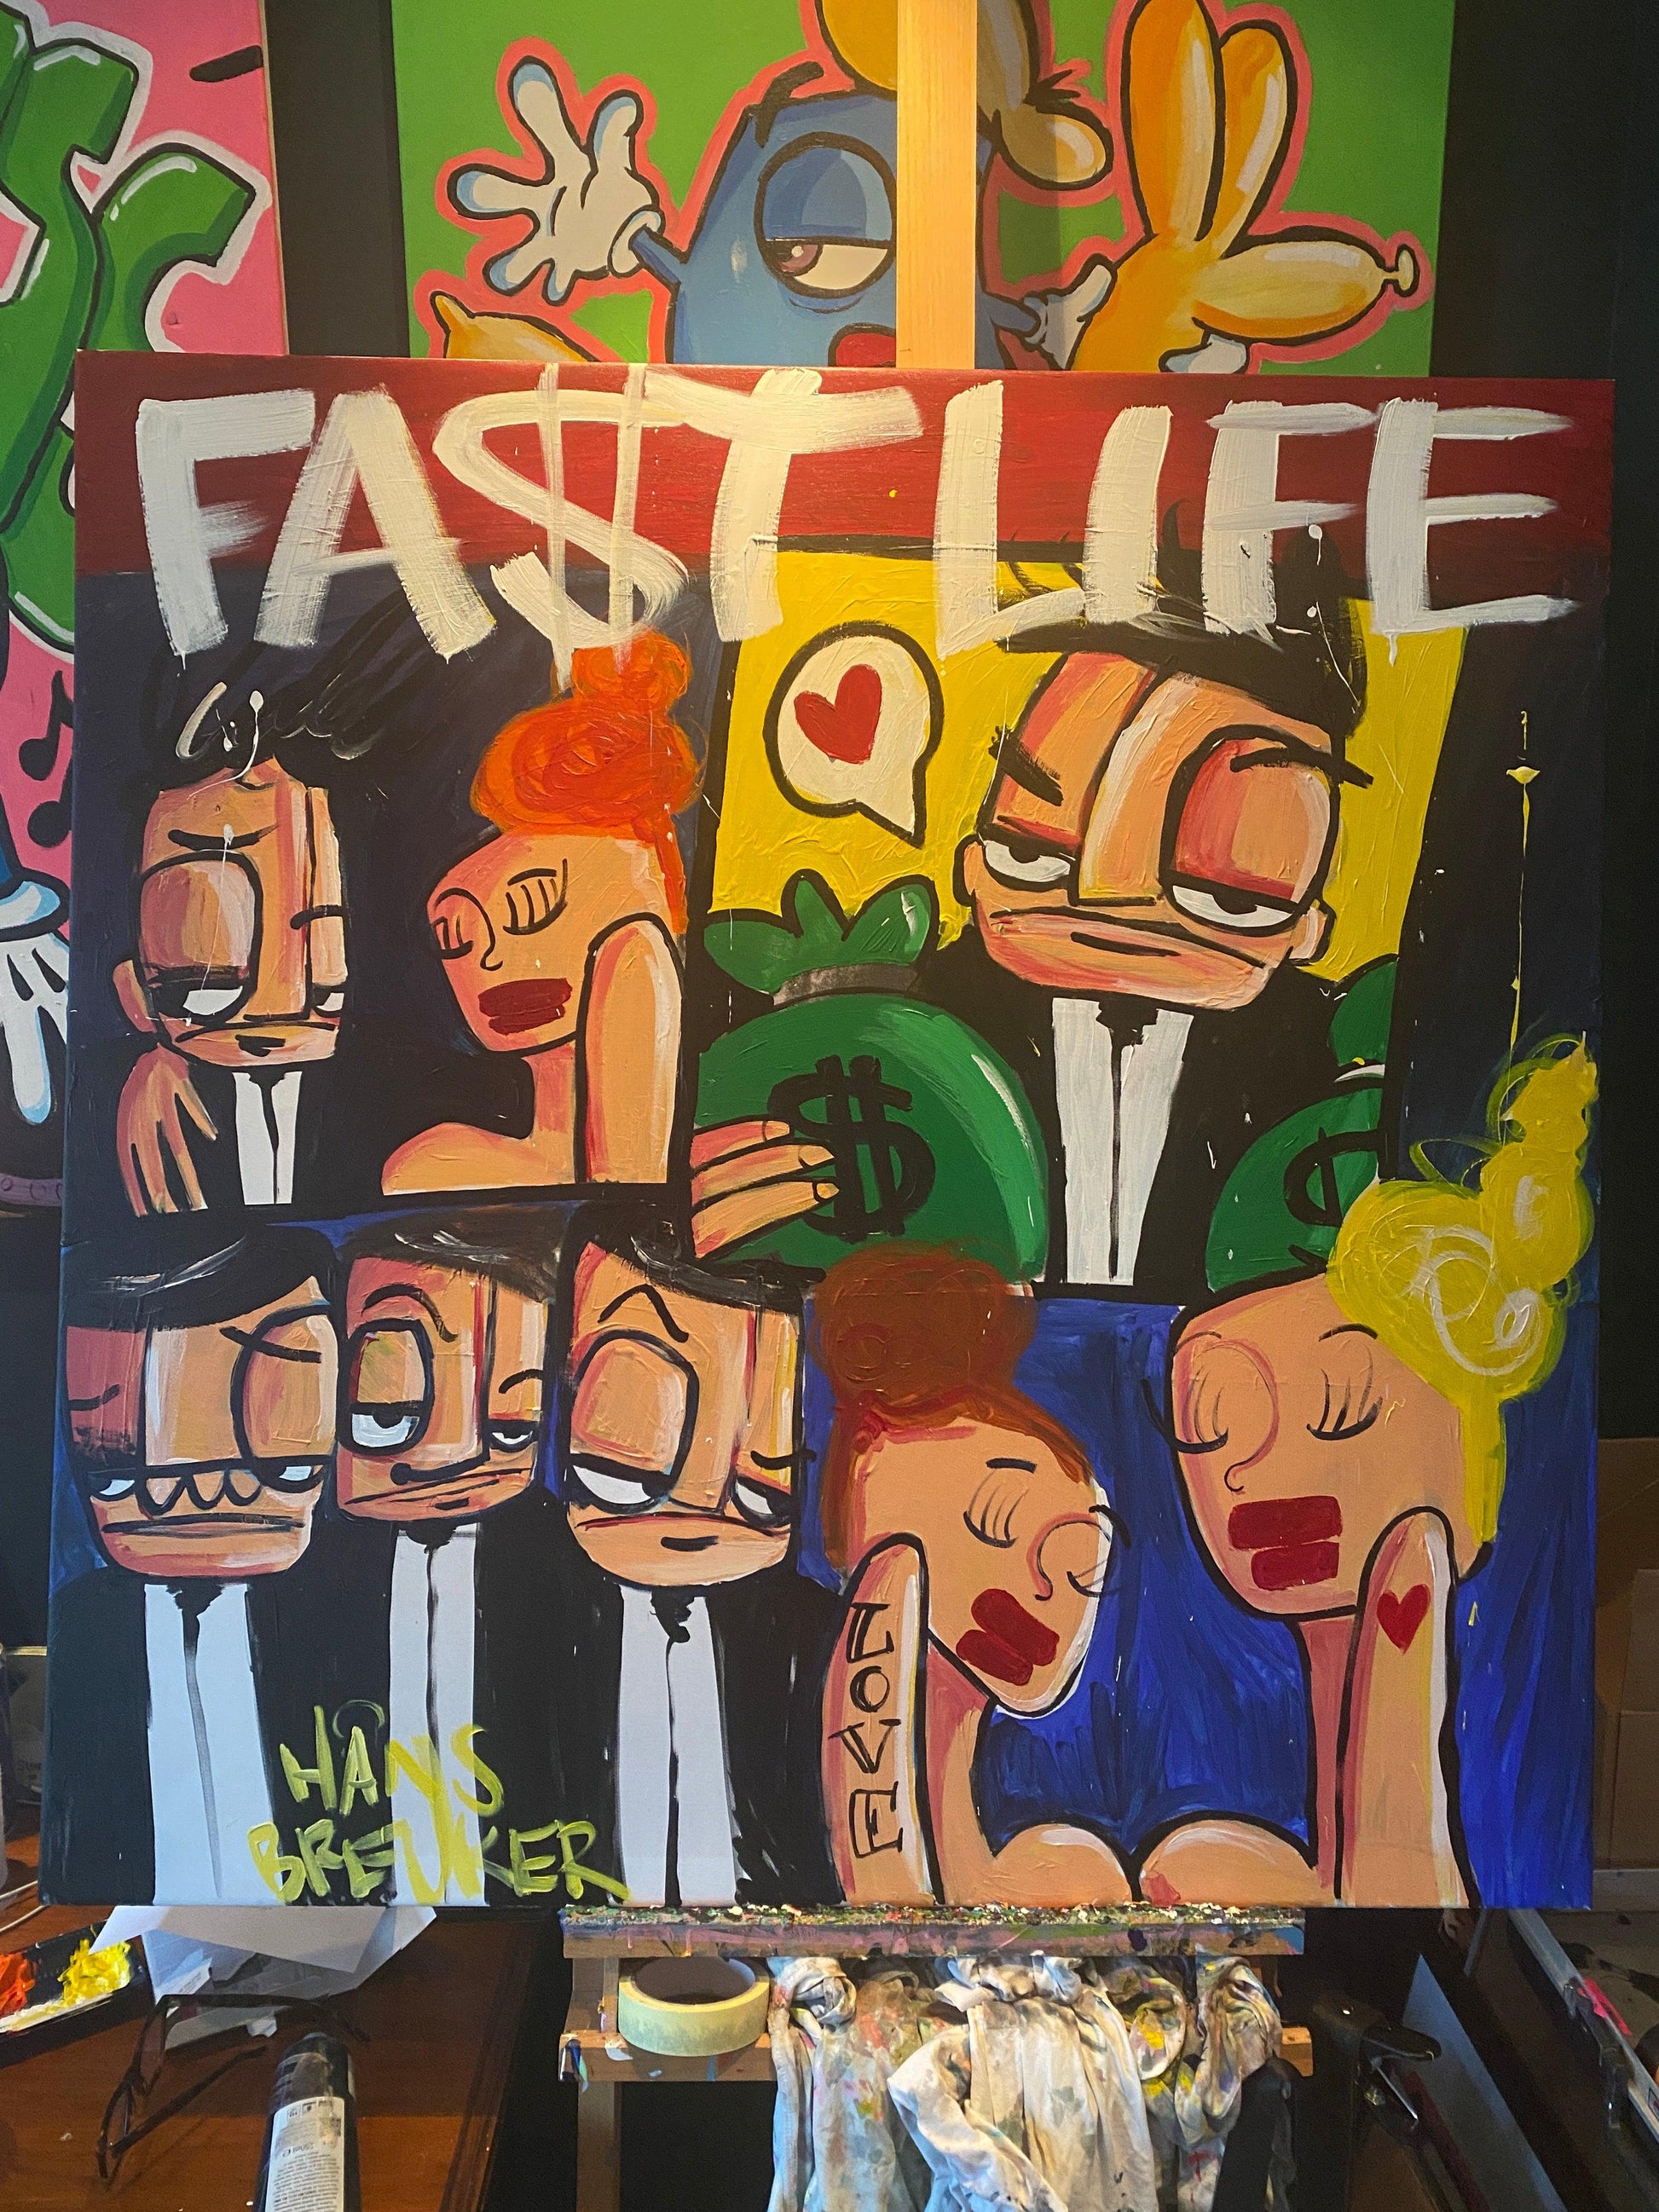 Fastlife 100 x 100 cm. Uniek schilderij. Love for life and the dollar - Hans Breuker